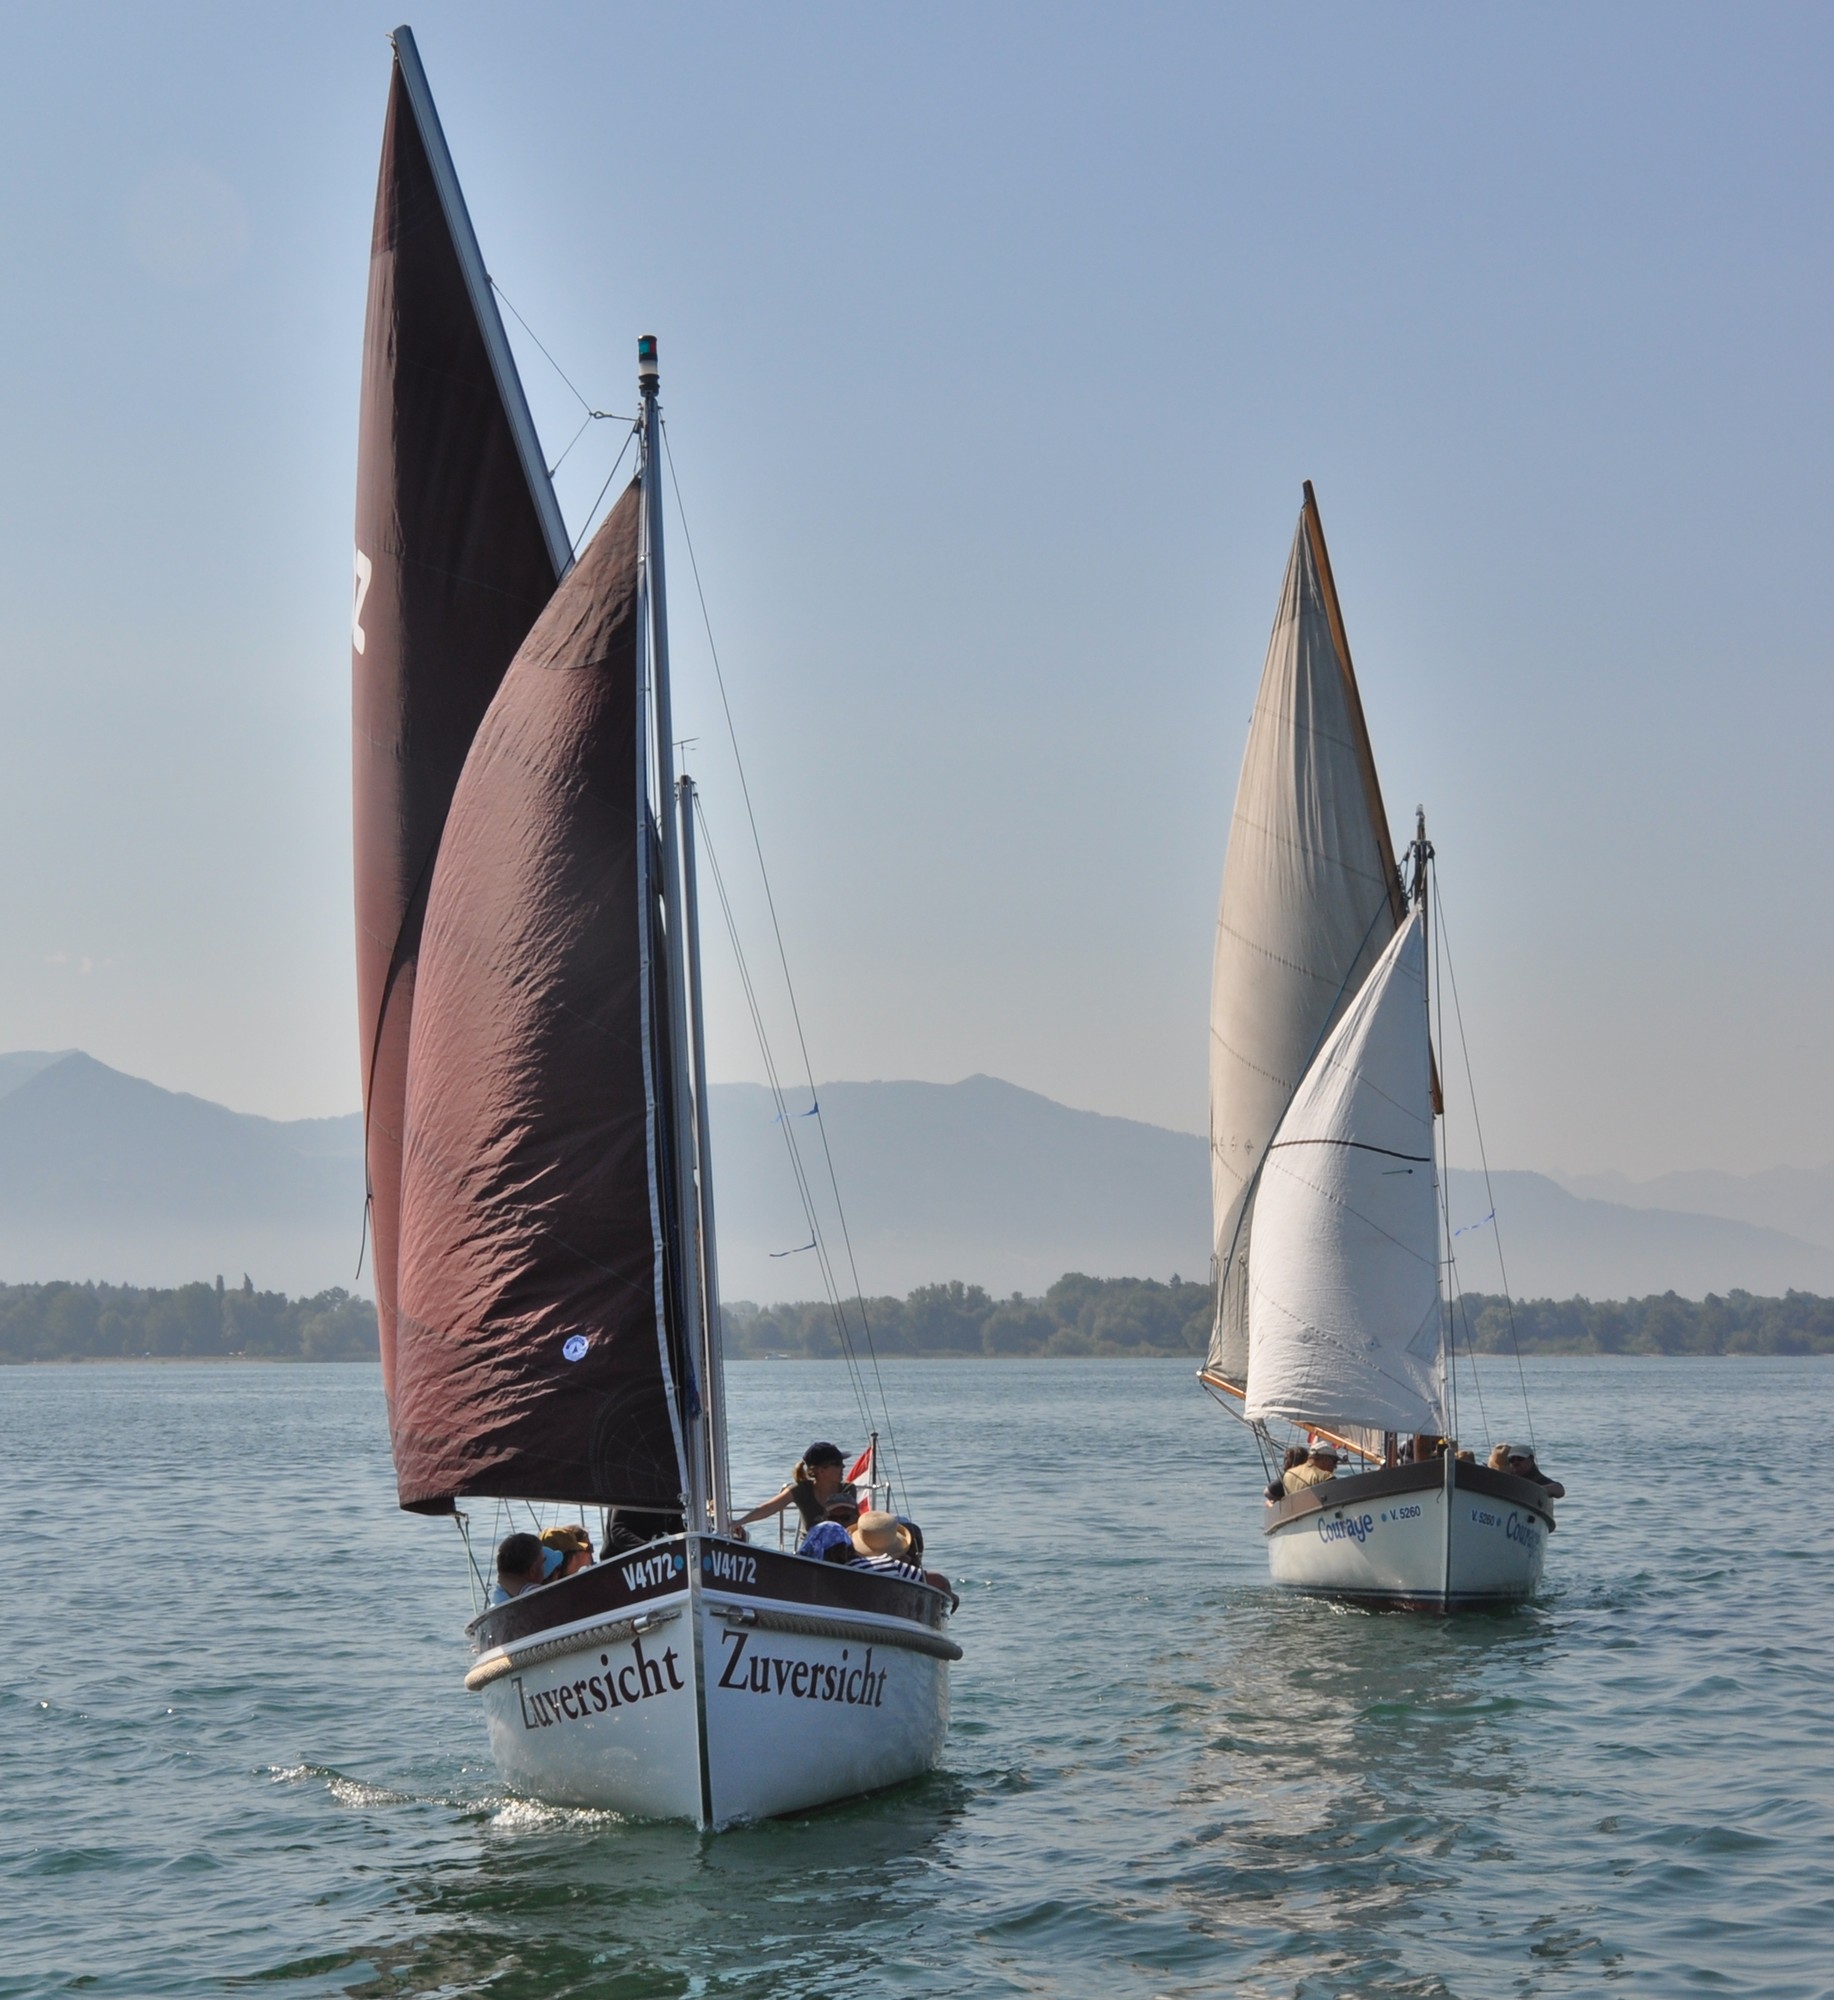 Unsere 2 Jugendwanderkutter "Zuversicht" und "Courage" segeln auf dem Bodensee